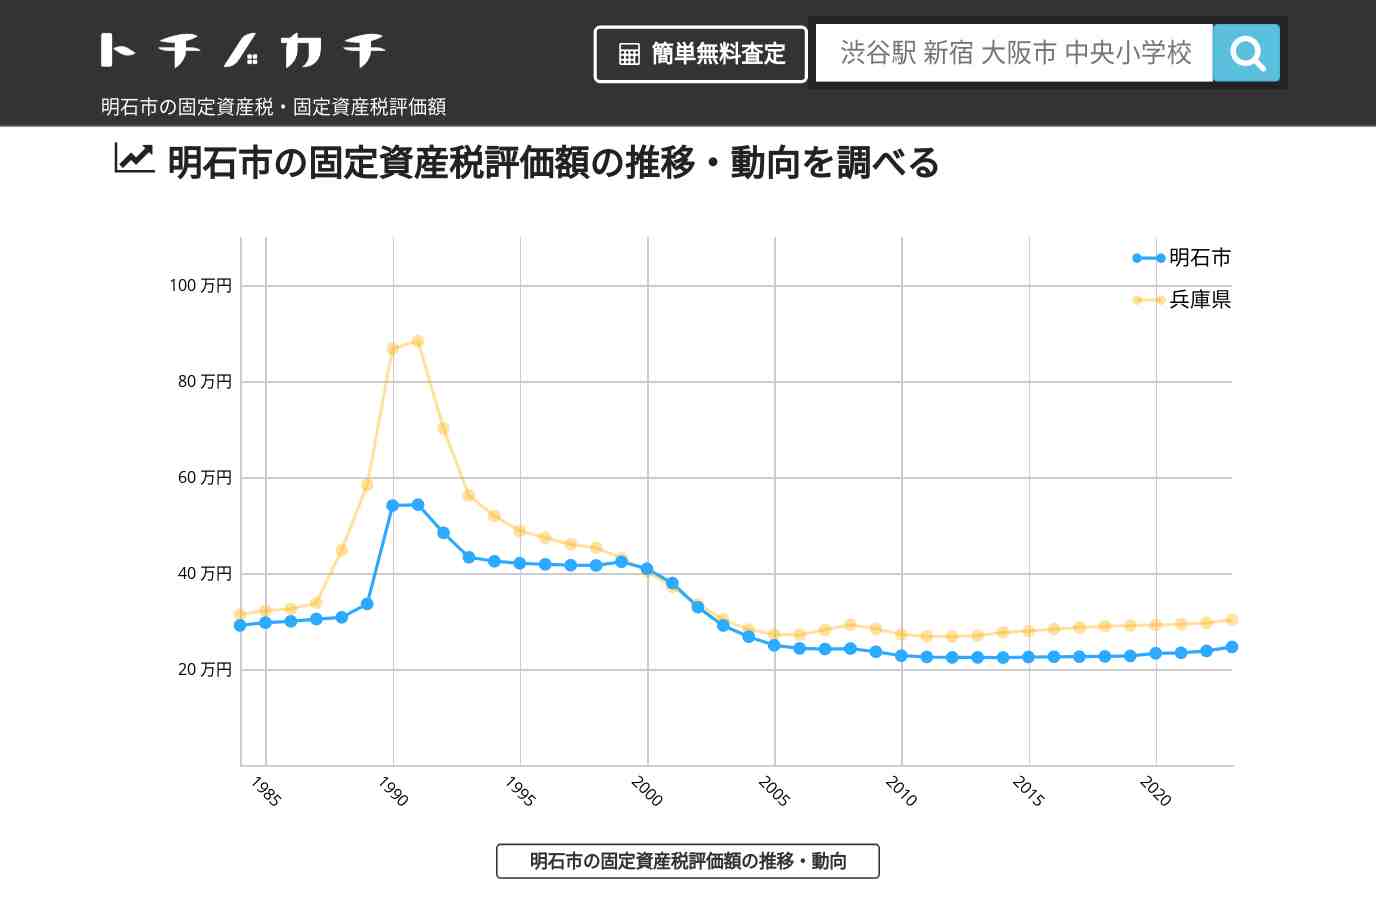 王子小学校(兵庫県 明石市)周辺の固定資産税・固定資産税評価額 | トチノカチ